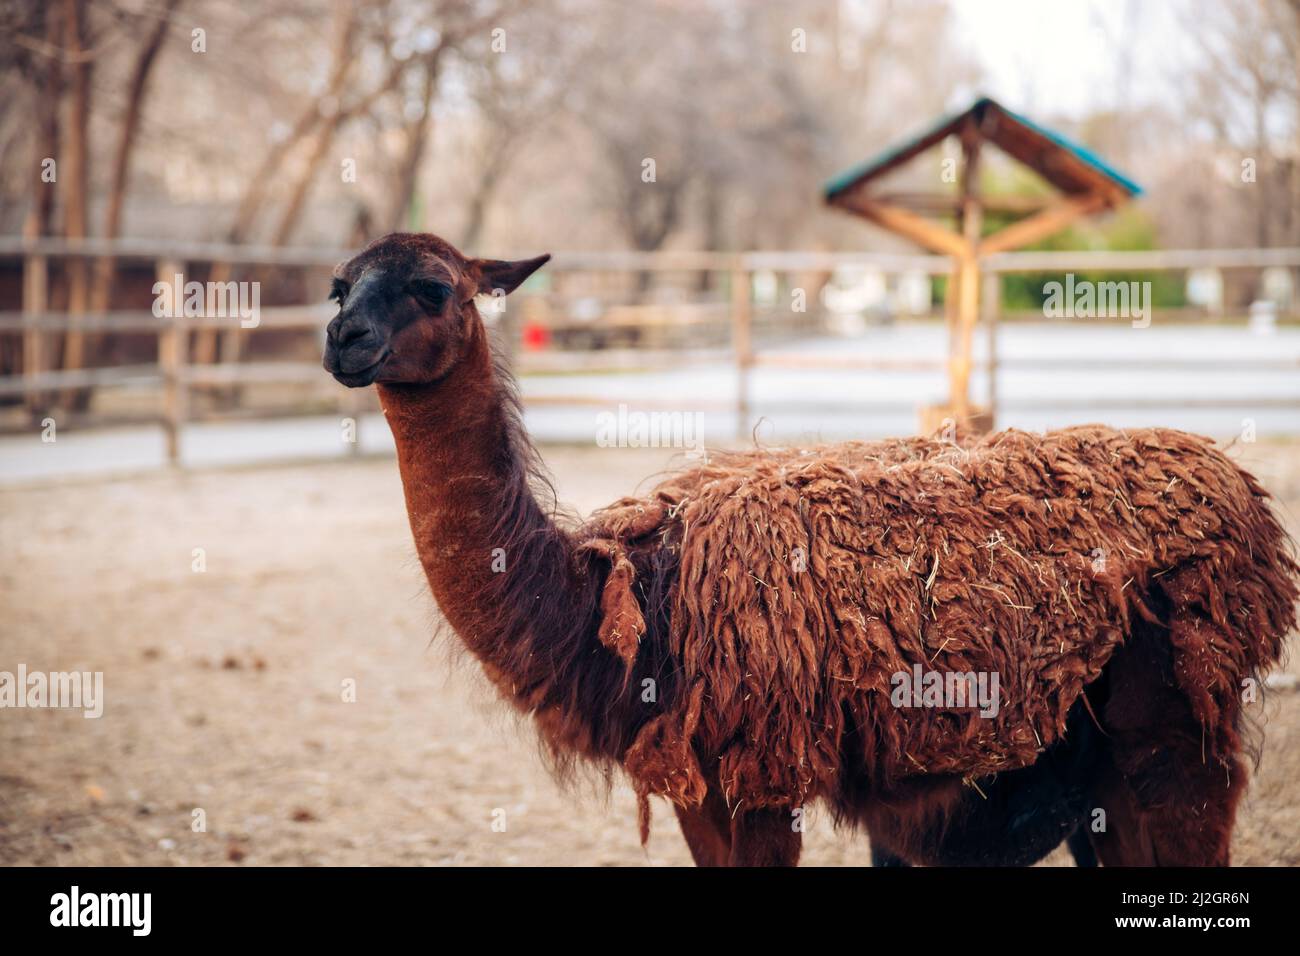 Ein süßes braunes Lama in einem Zoo-Park. Ein flauschiges Tiersäugetier. Ähnlich einer Alpaka. Hochwertige Fotos Stockfoto